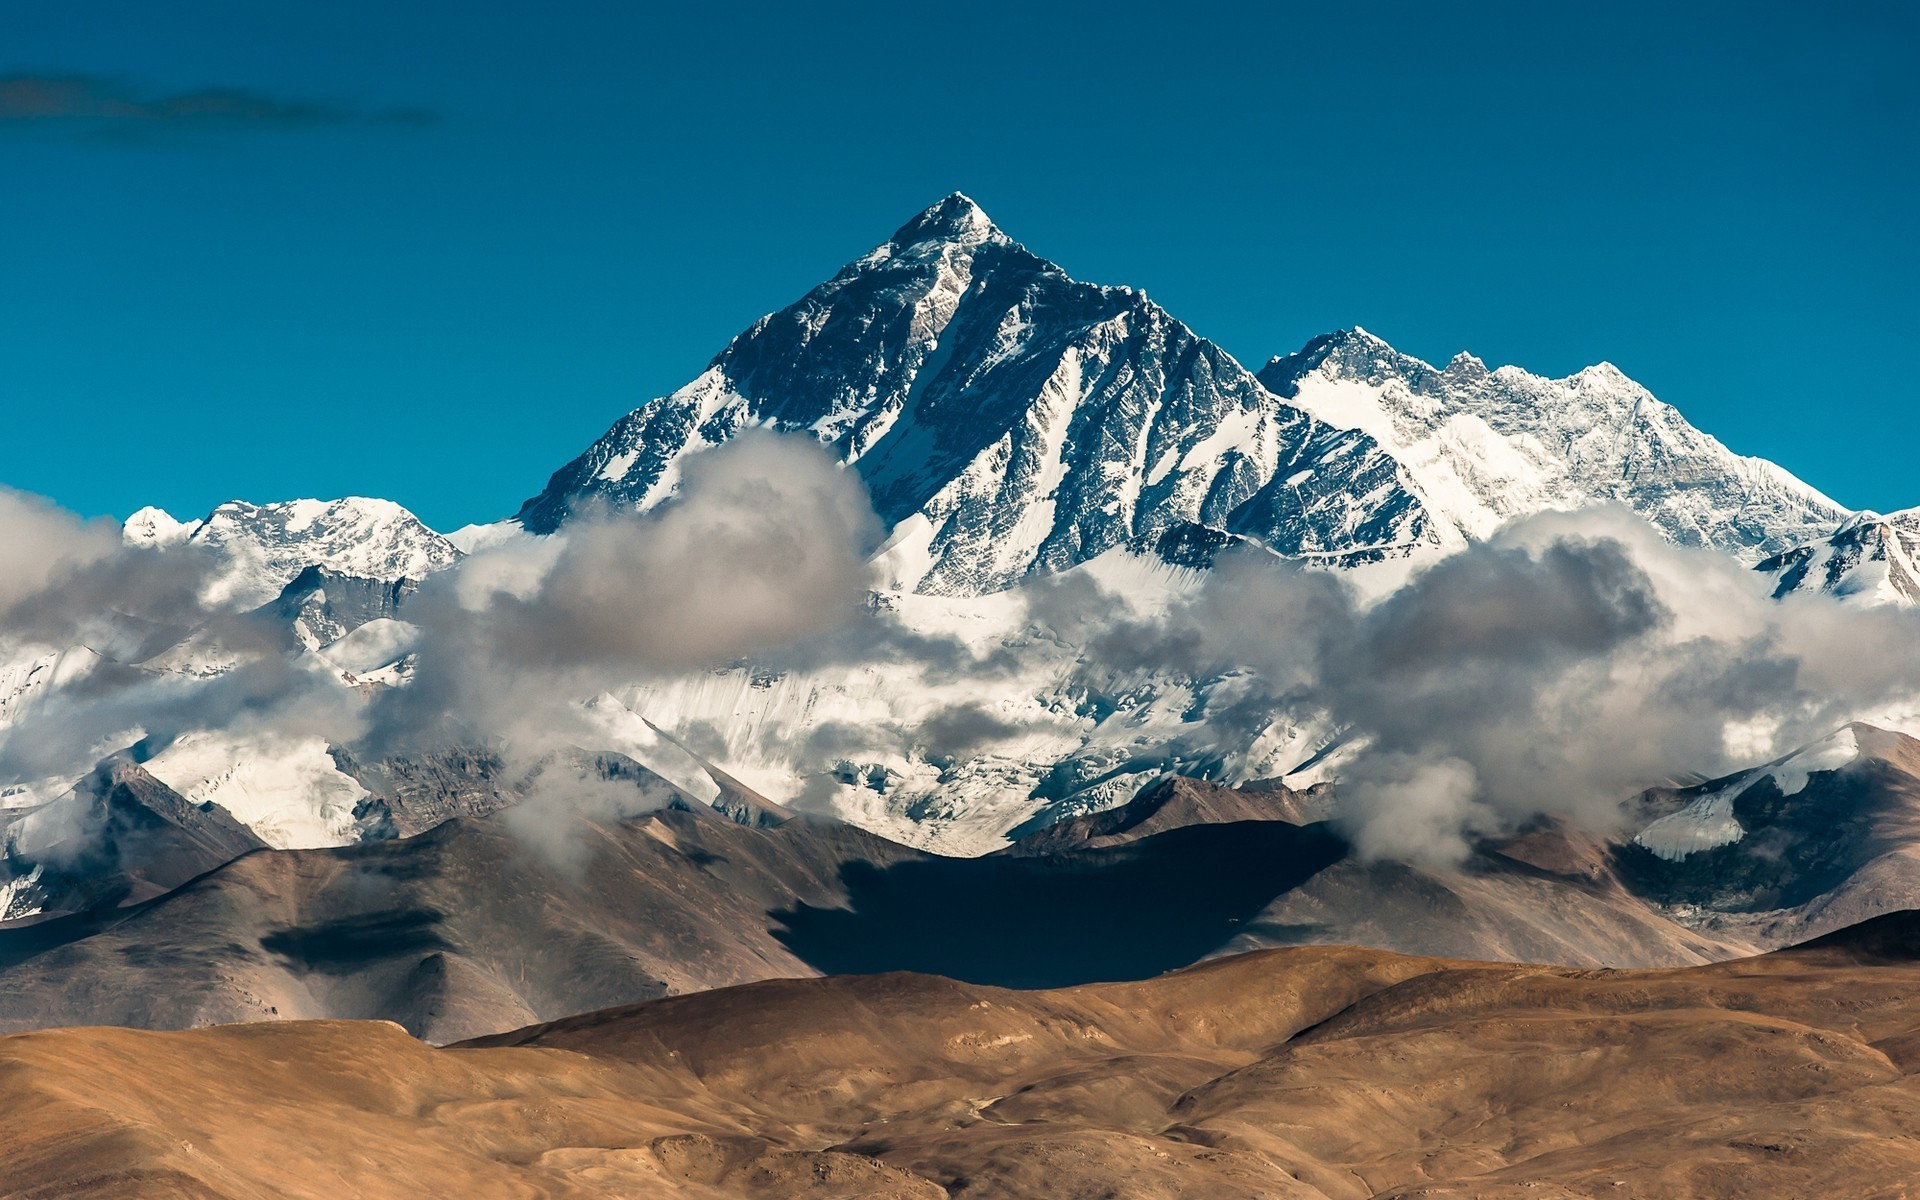 Скачать обои Гора Эверест на телефон бесплатно